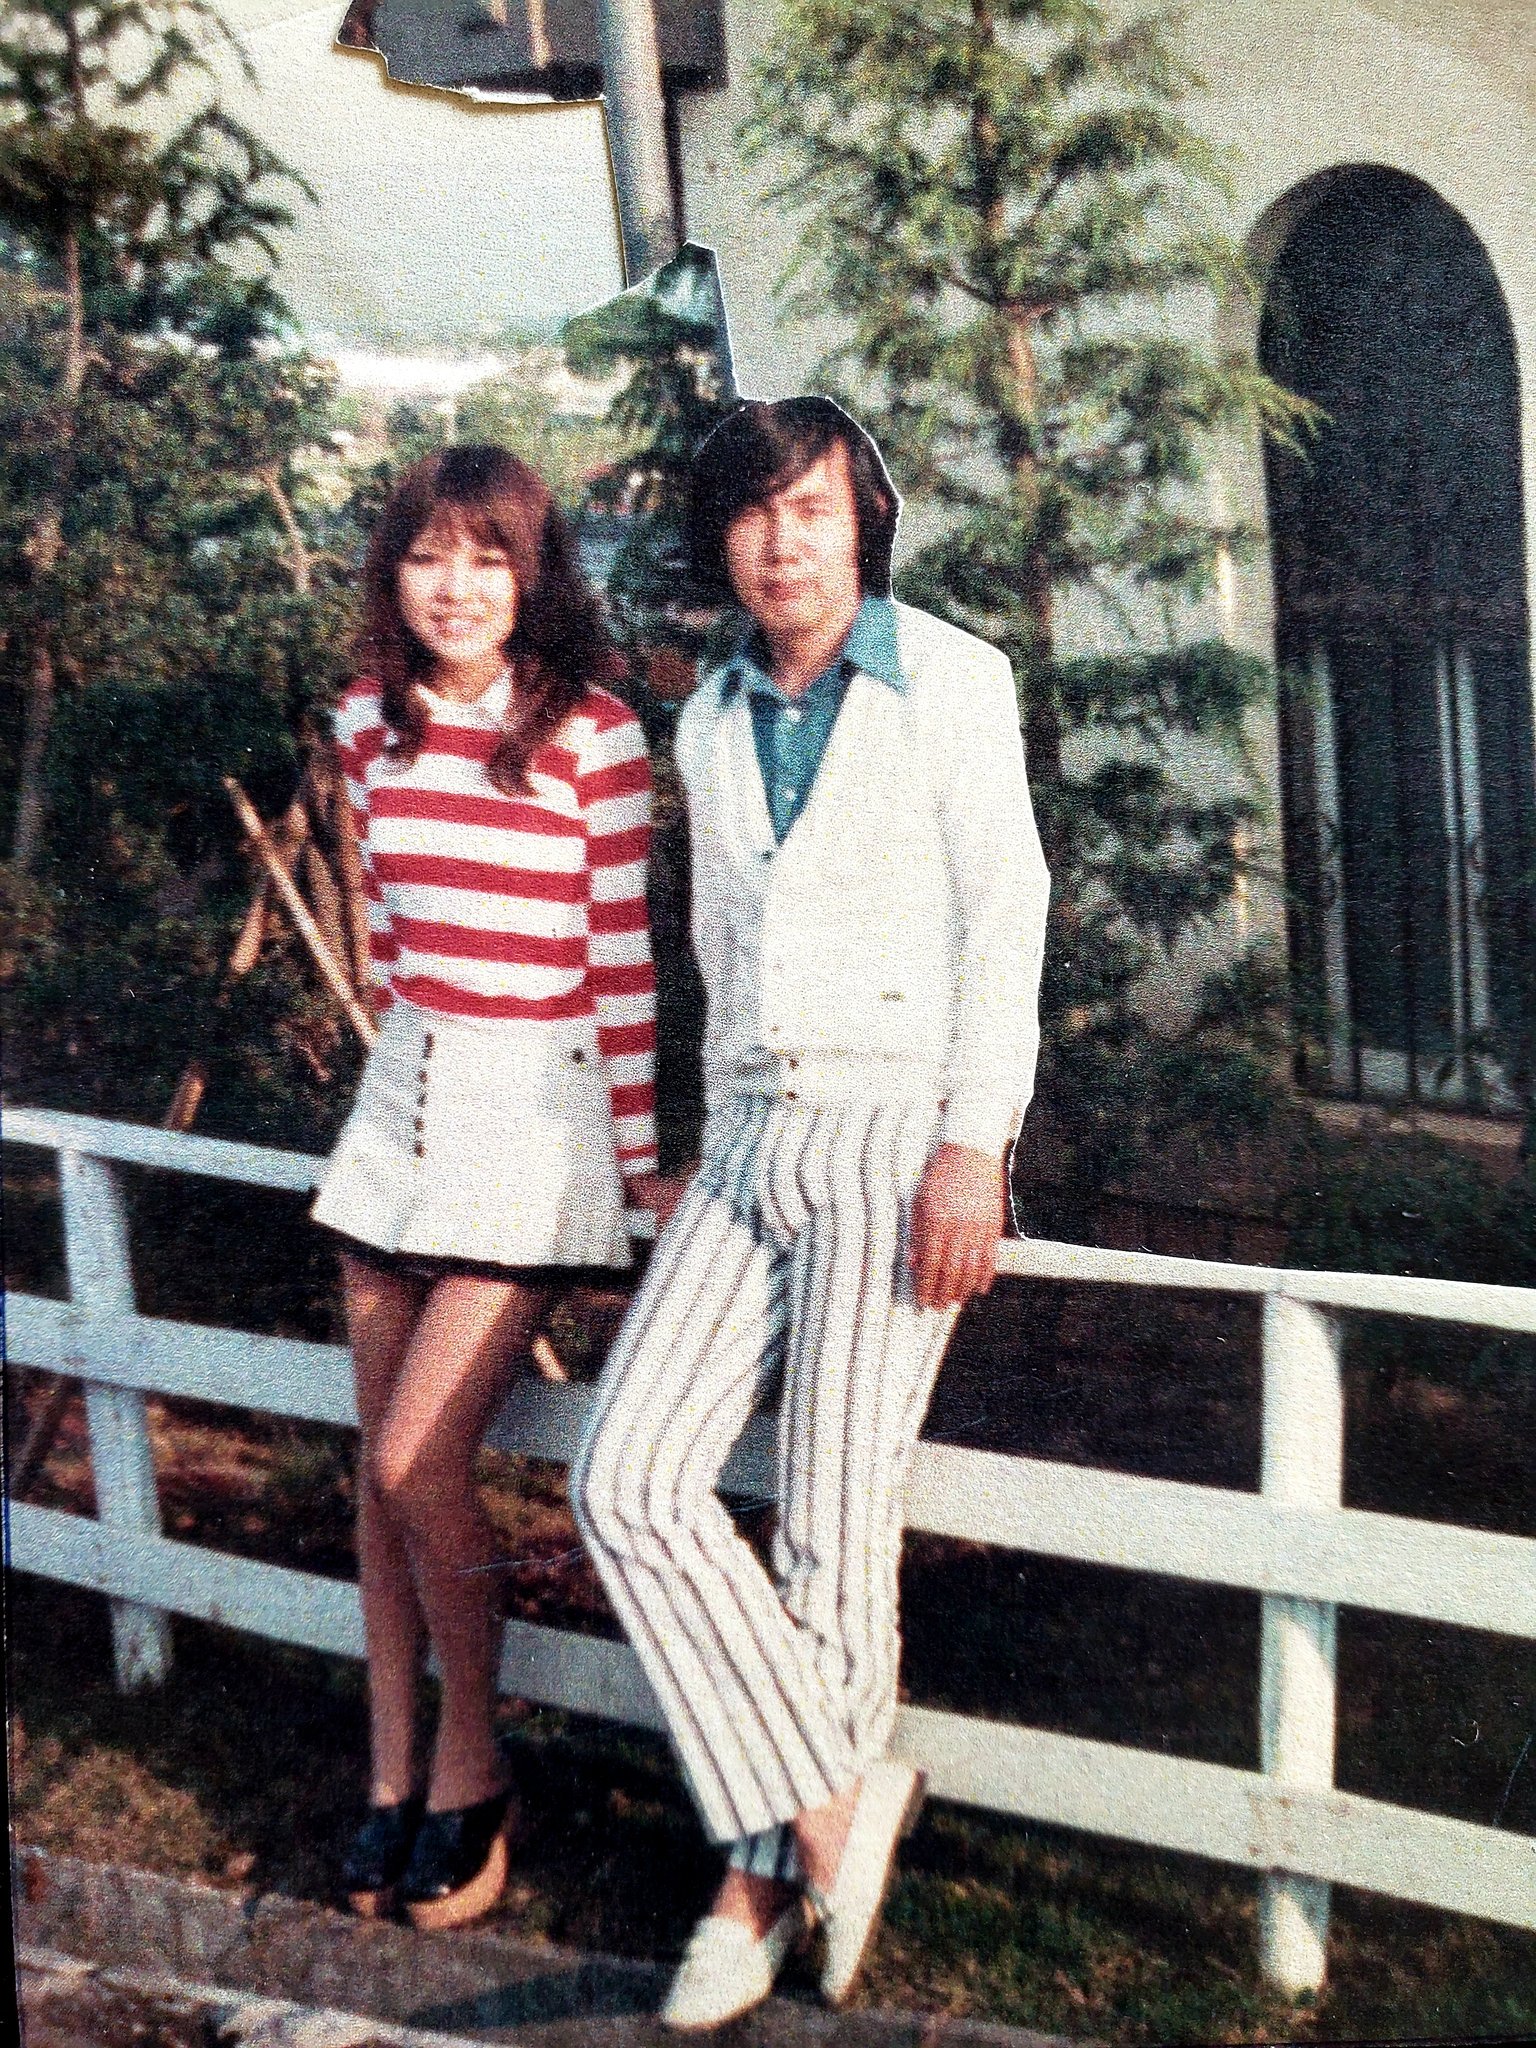 吉田光太 父と母の昔の写真 アイビールック というファッションが流行っていた頃 オカン 若えぇ 当たり前か T Co Ukvfpapz1h Twitter